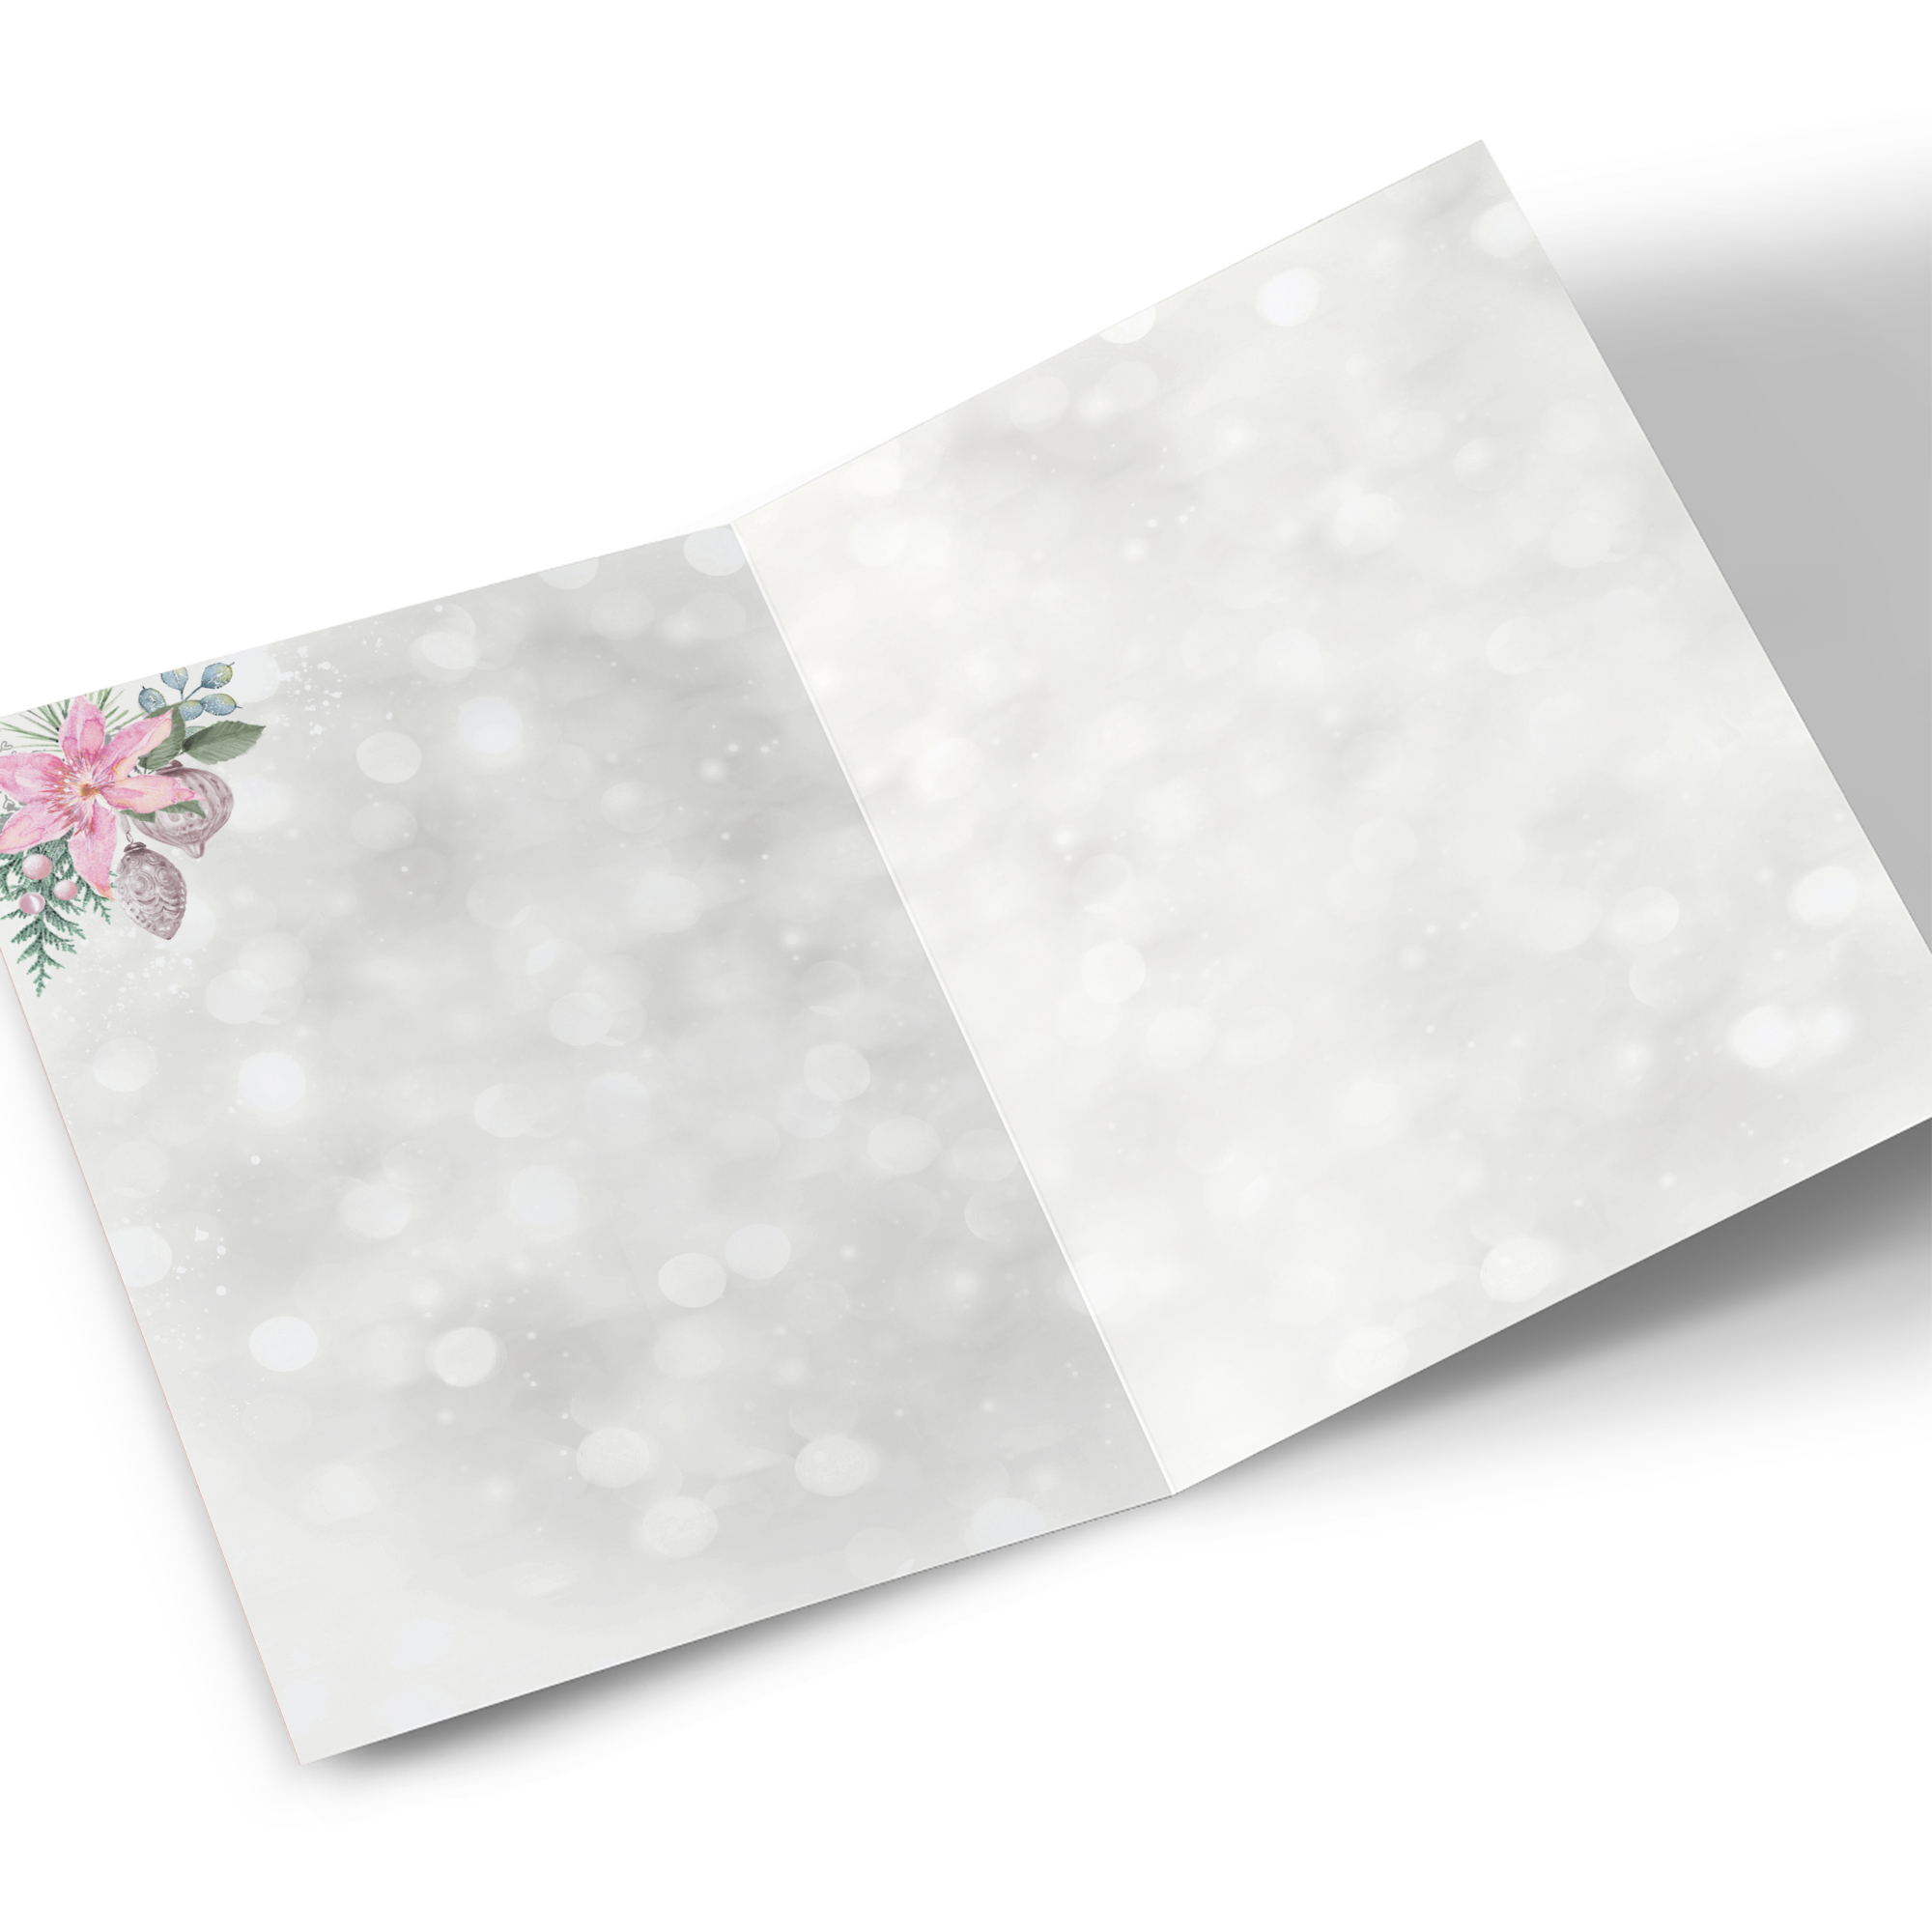 Personalised Christmas Card - Wonderful Wife, Grey, Pink Flowers